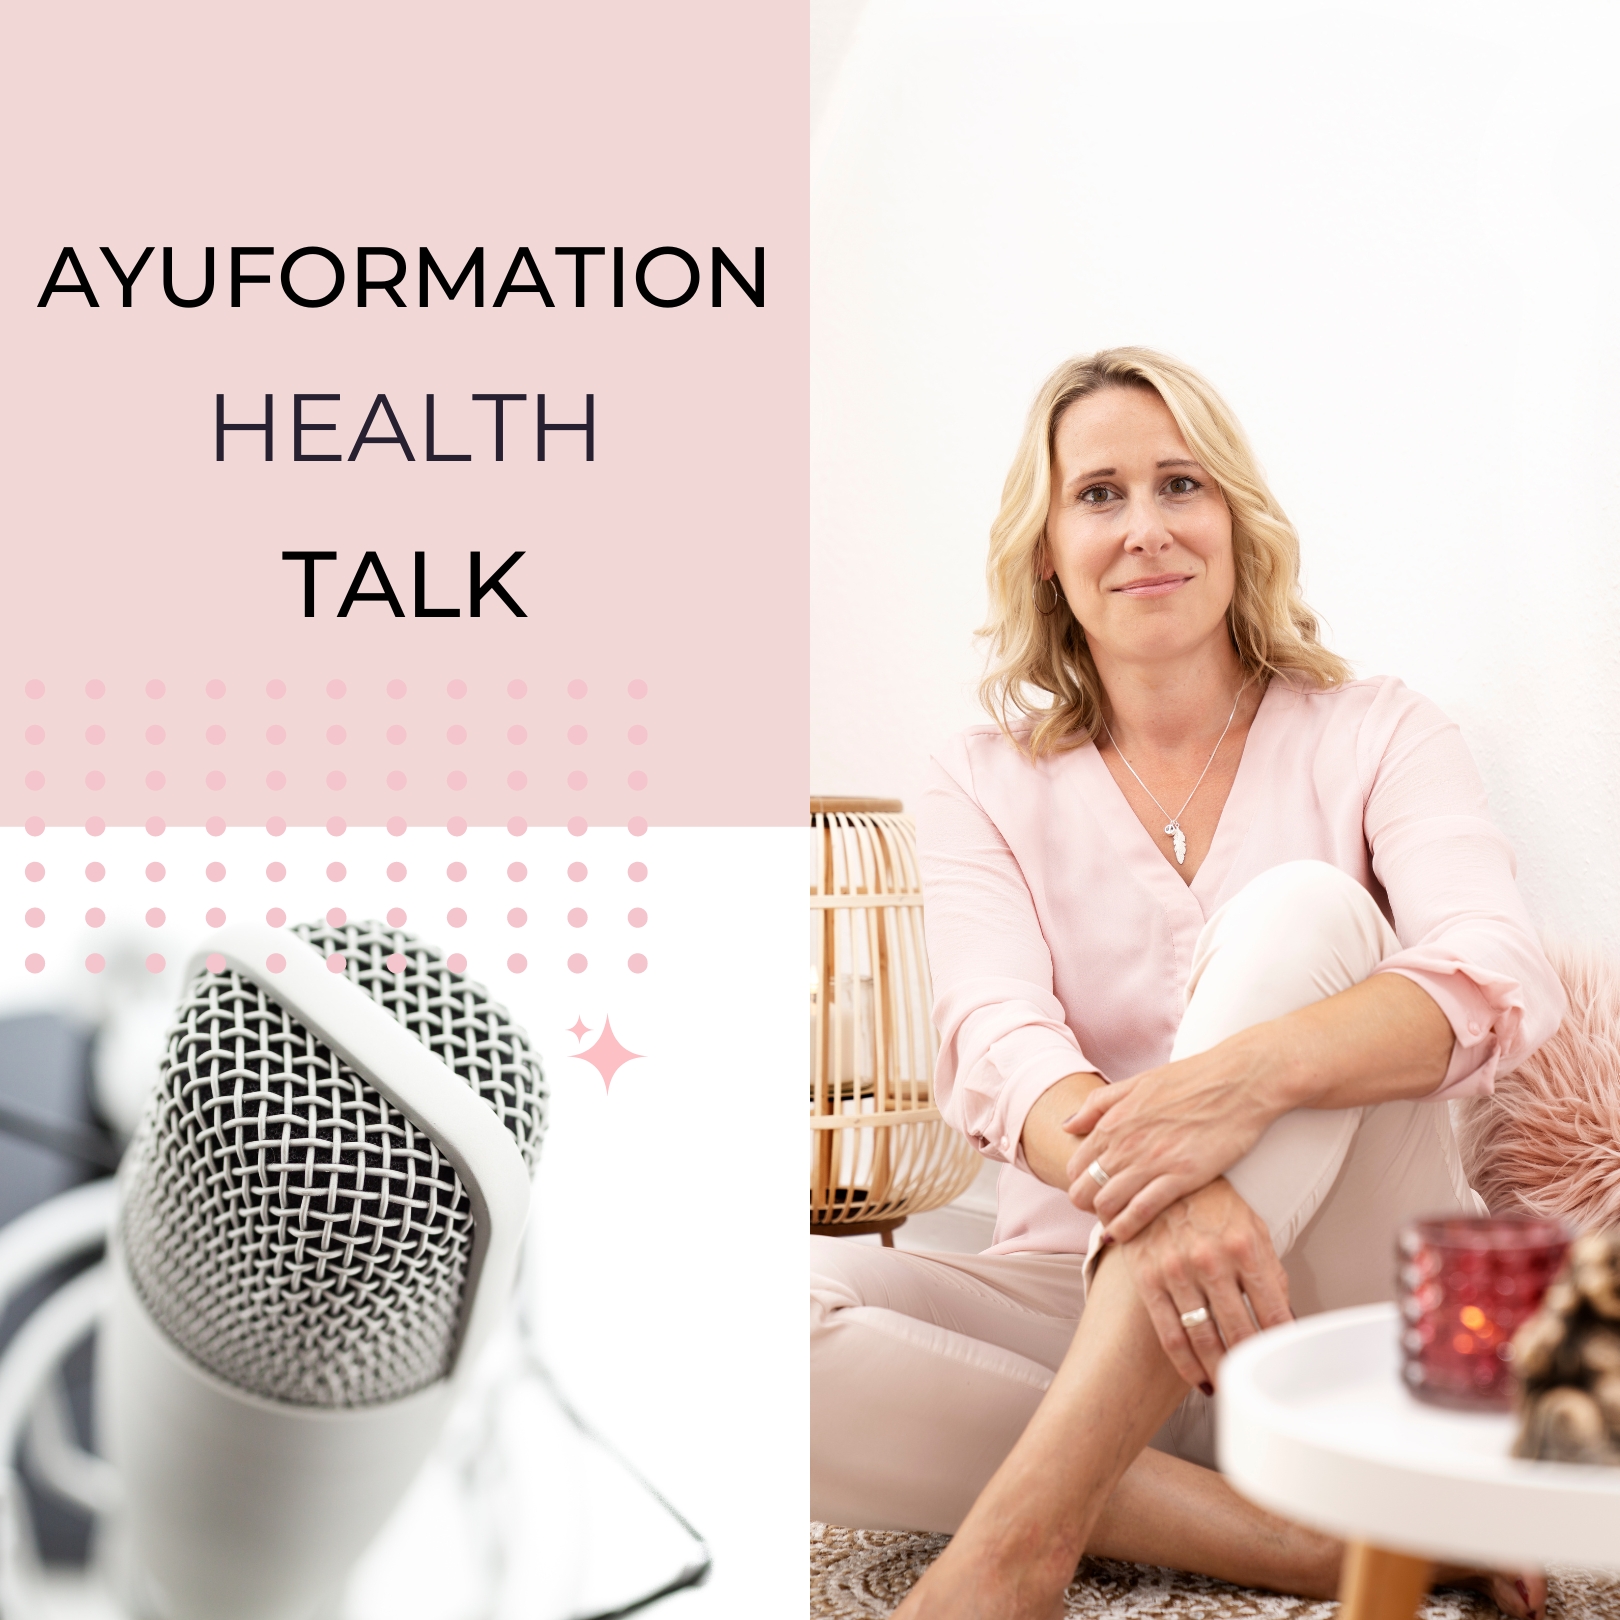 Ayuformation Health Talk